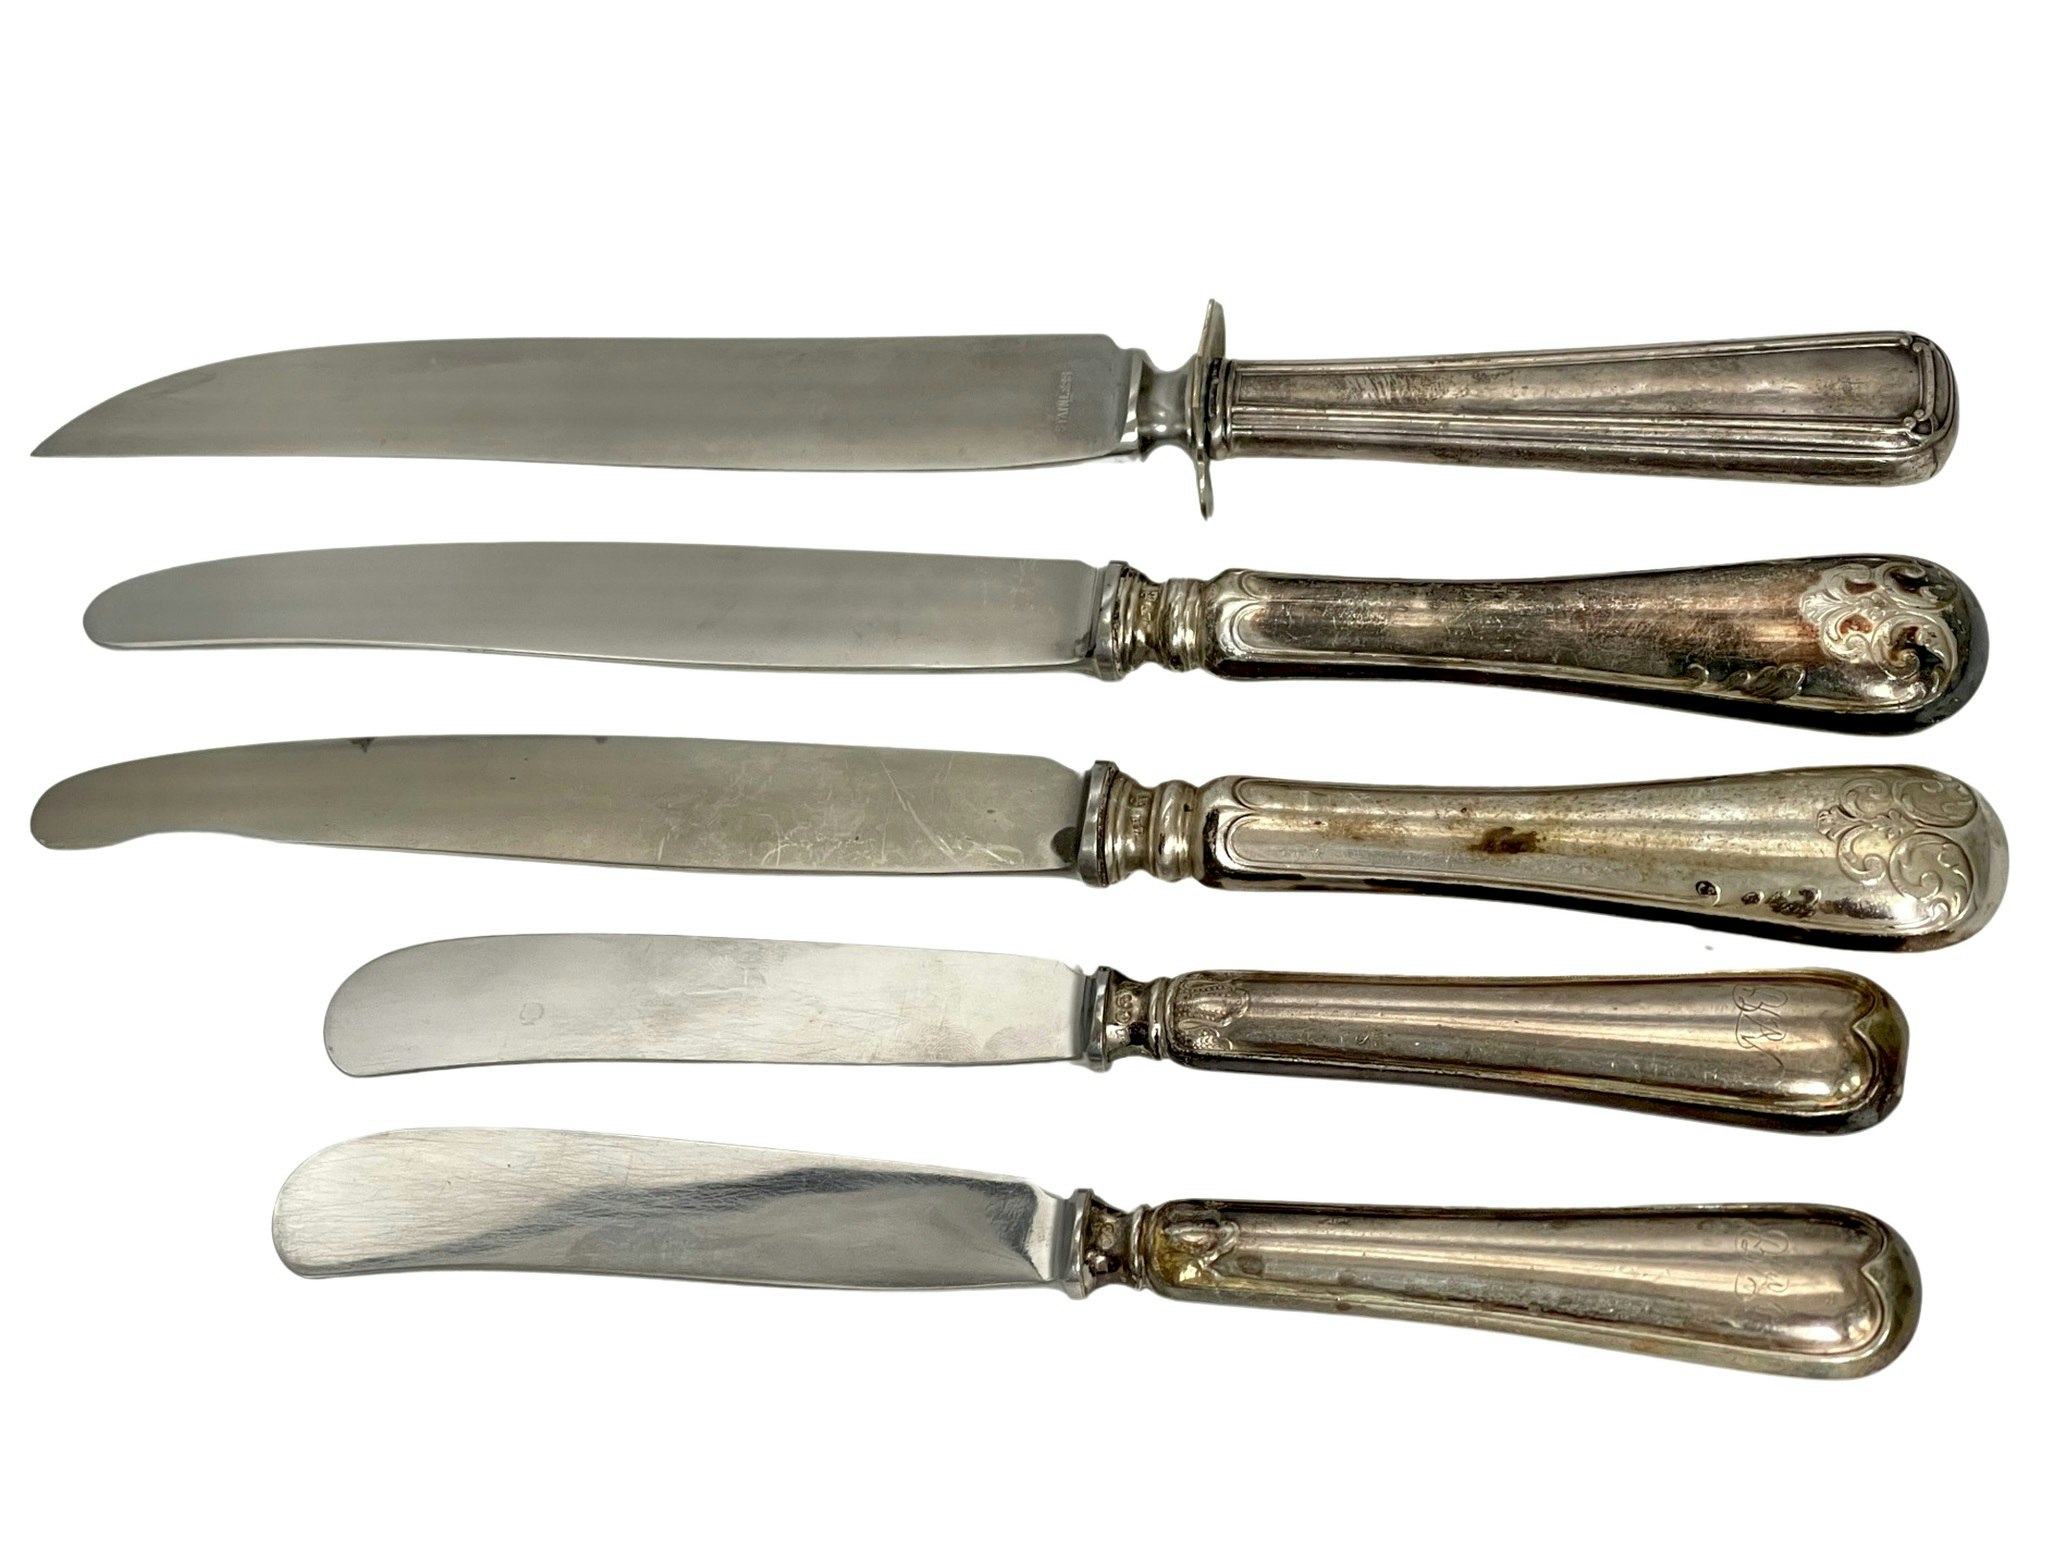 Forskellige modeller af sølvknive med stålblade ca 383 g